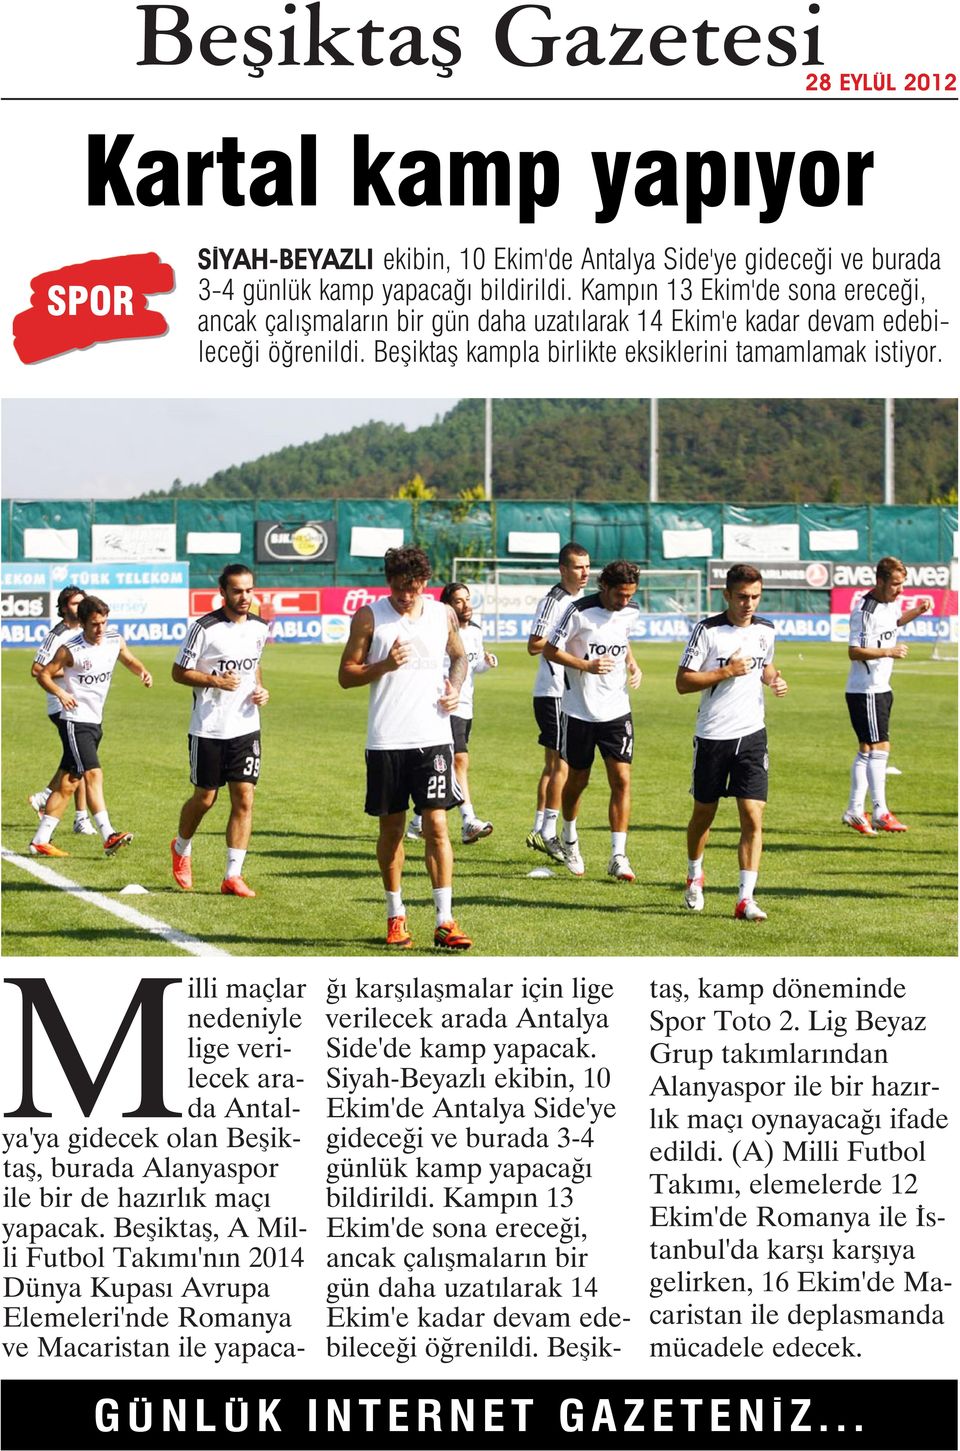 Milli maçlar nedeniyle lige verilecek arada Antalya'ya gidecek olan Beşiktaş, burada Alanyaspor ile bir de hazırlık maçı yapacak.